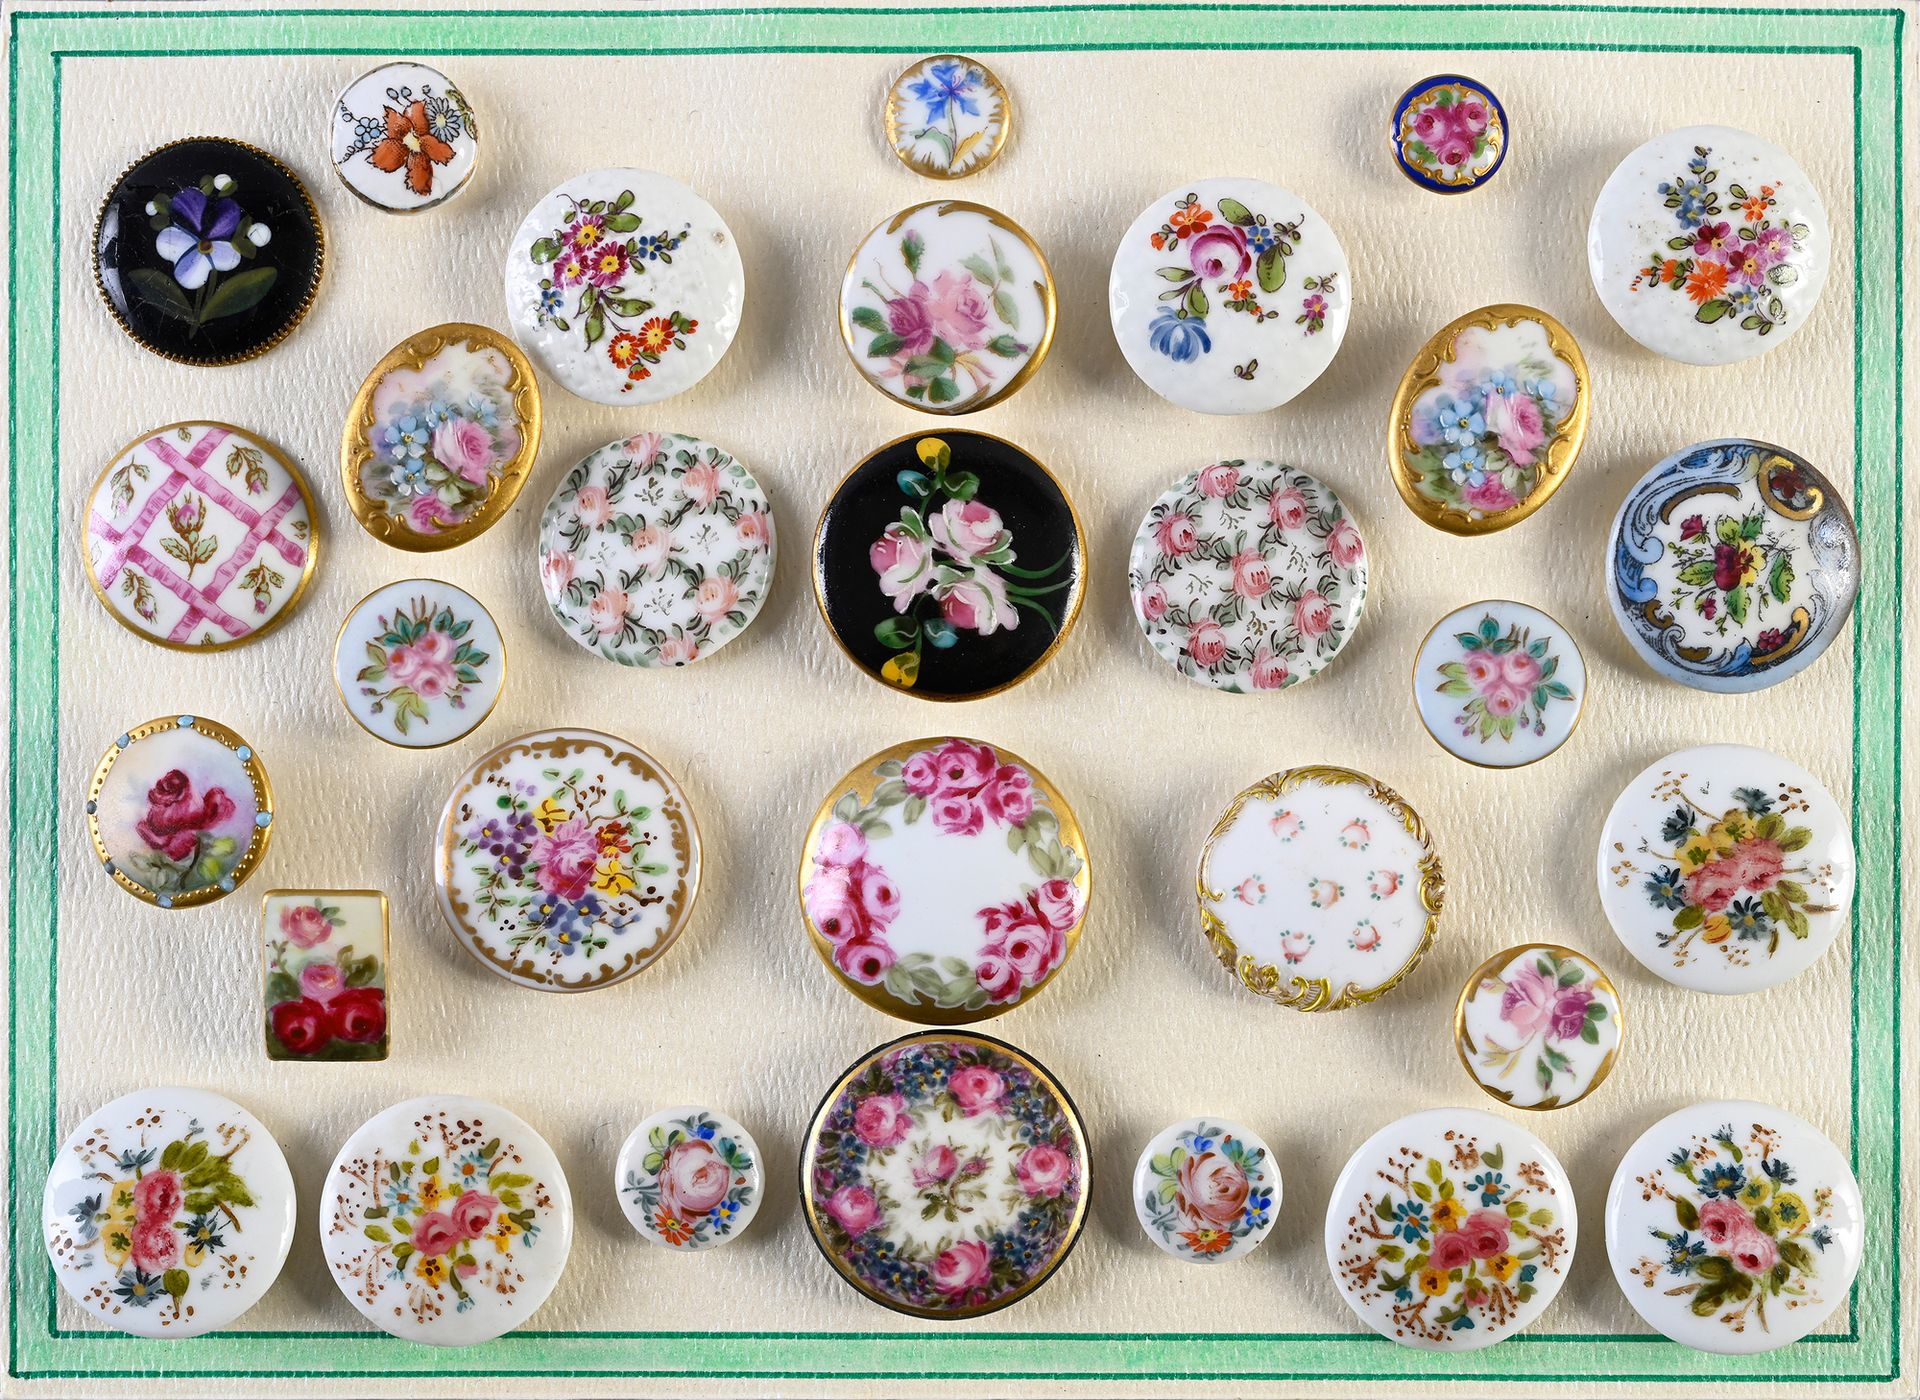 Null 彩绘和印花瓷纽扣，18-19 世纪。
三个盘子，包含 3 枚带有花束装饰的门内西瓷质纽扣、44 枚大多带有类似装饰的晚期纽扣和 9 枚带有字母图案的领&hellip;